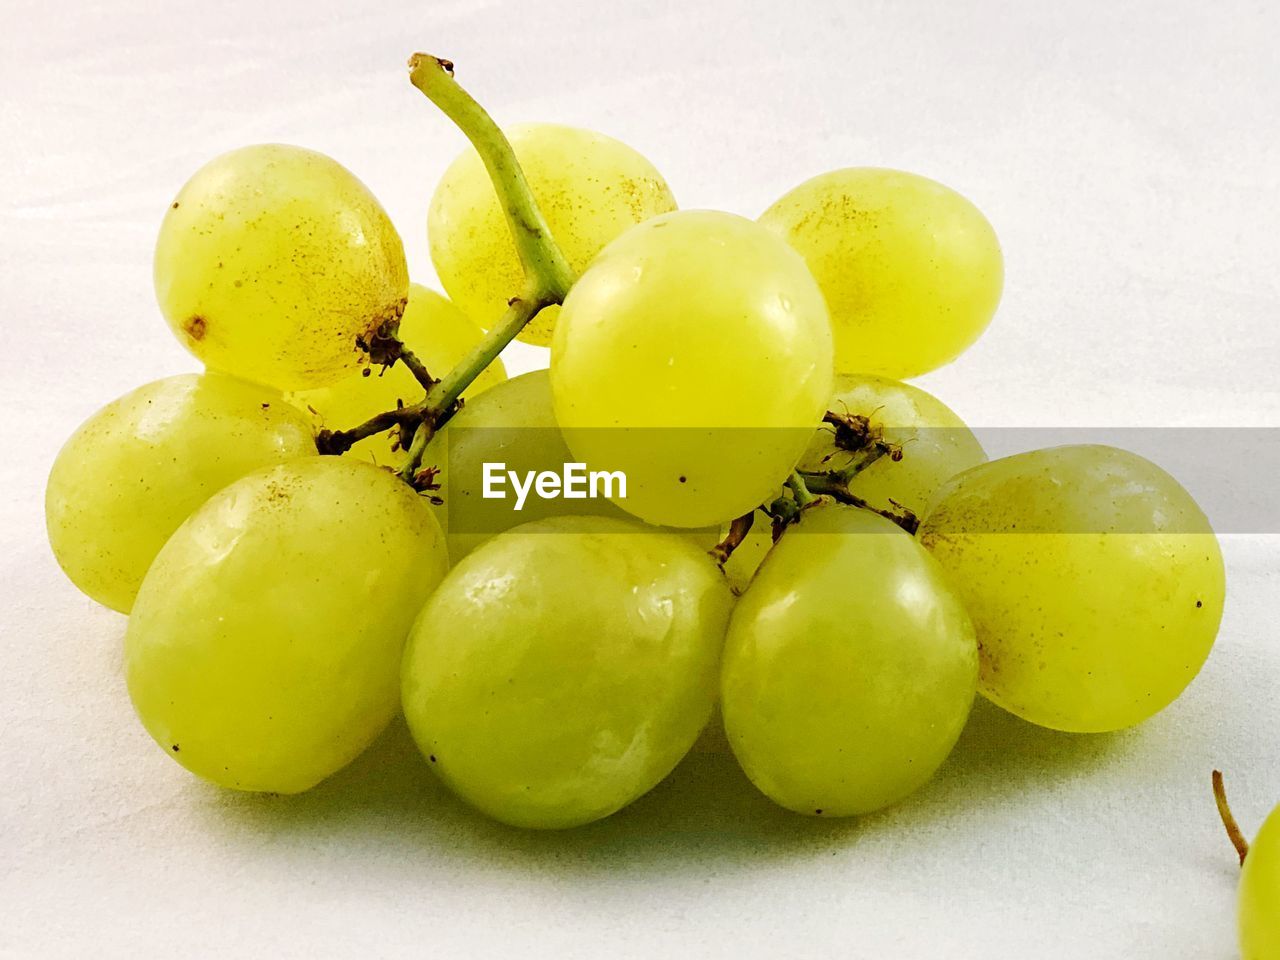 Uvas. close-up of grapes